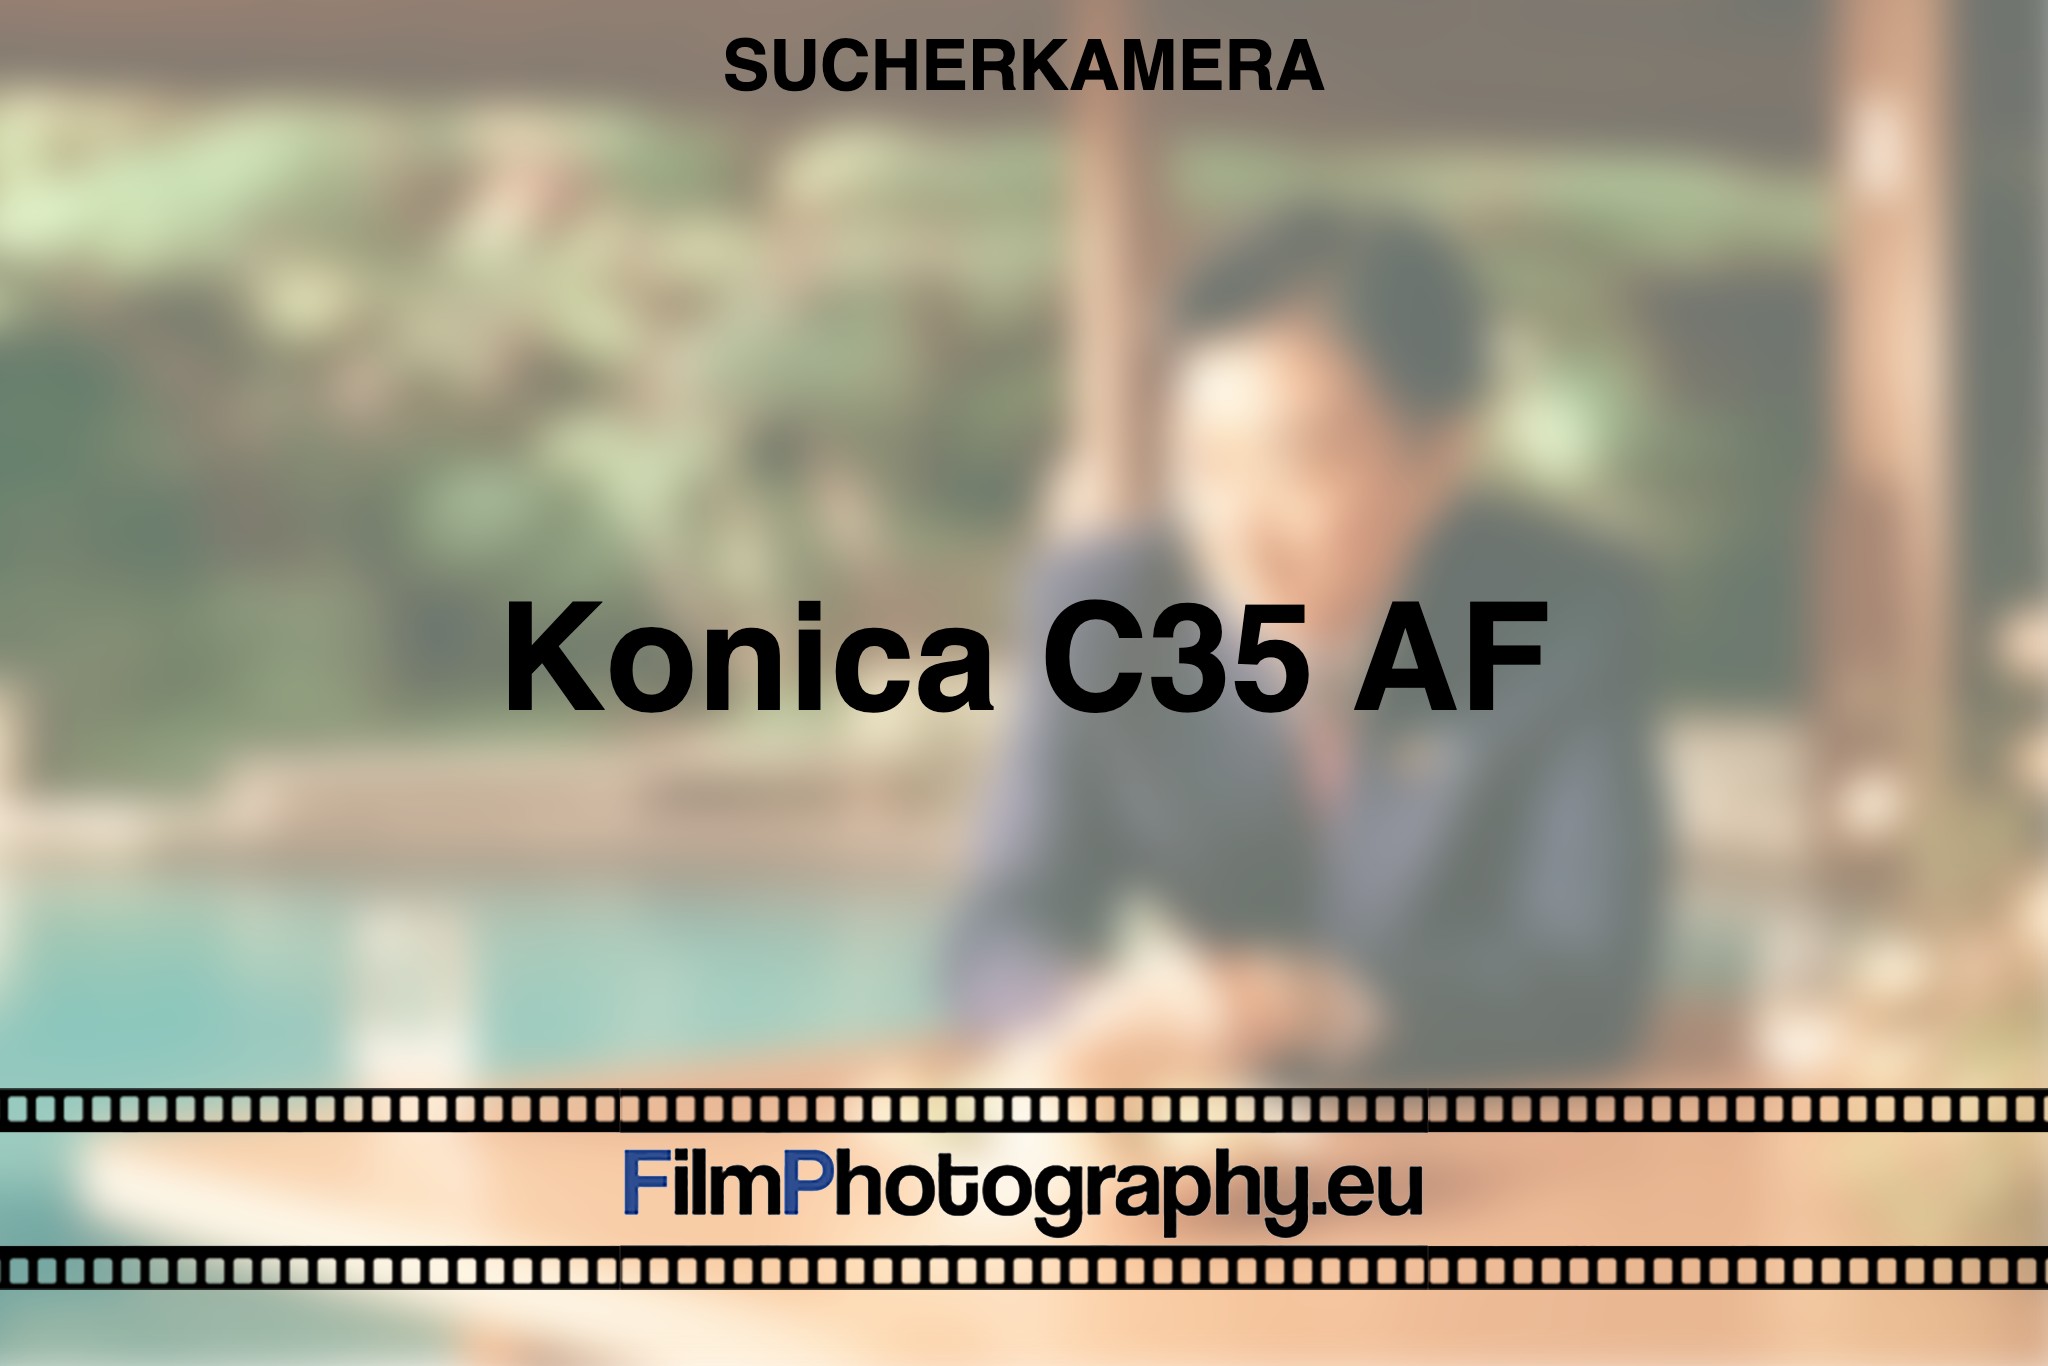 konica-c35-af-sucherkamera-bnv